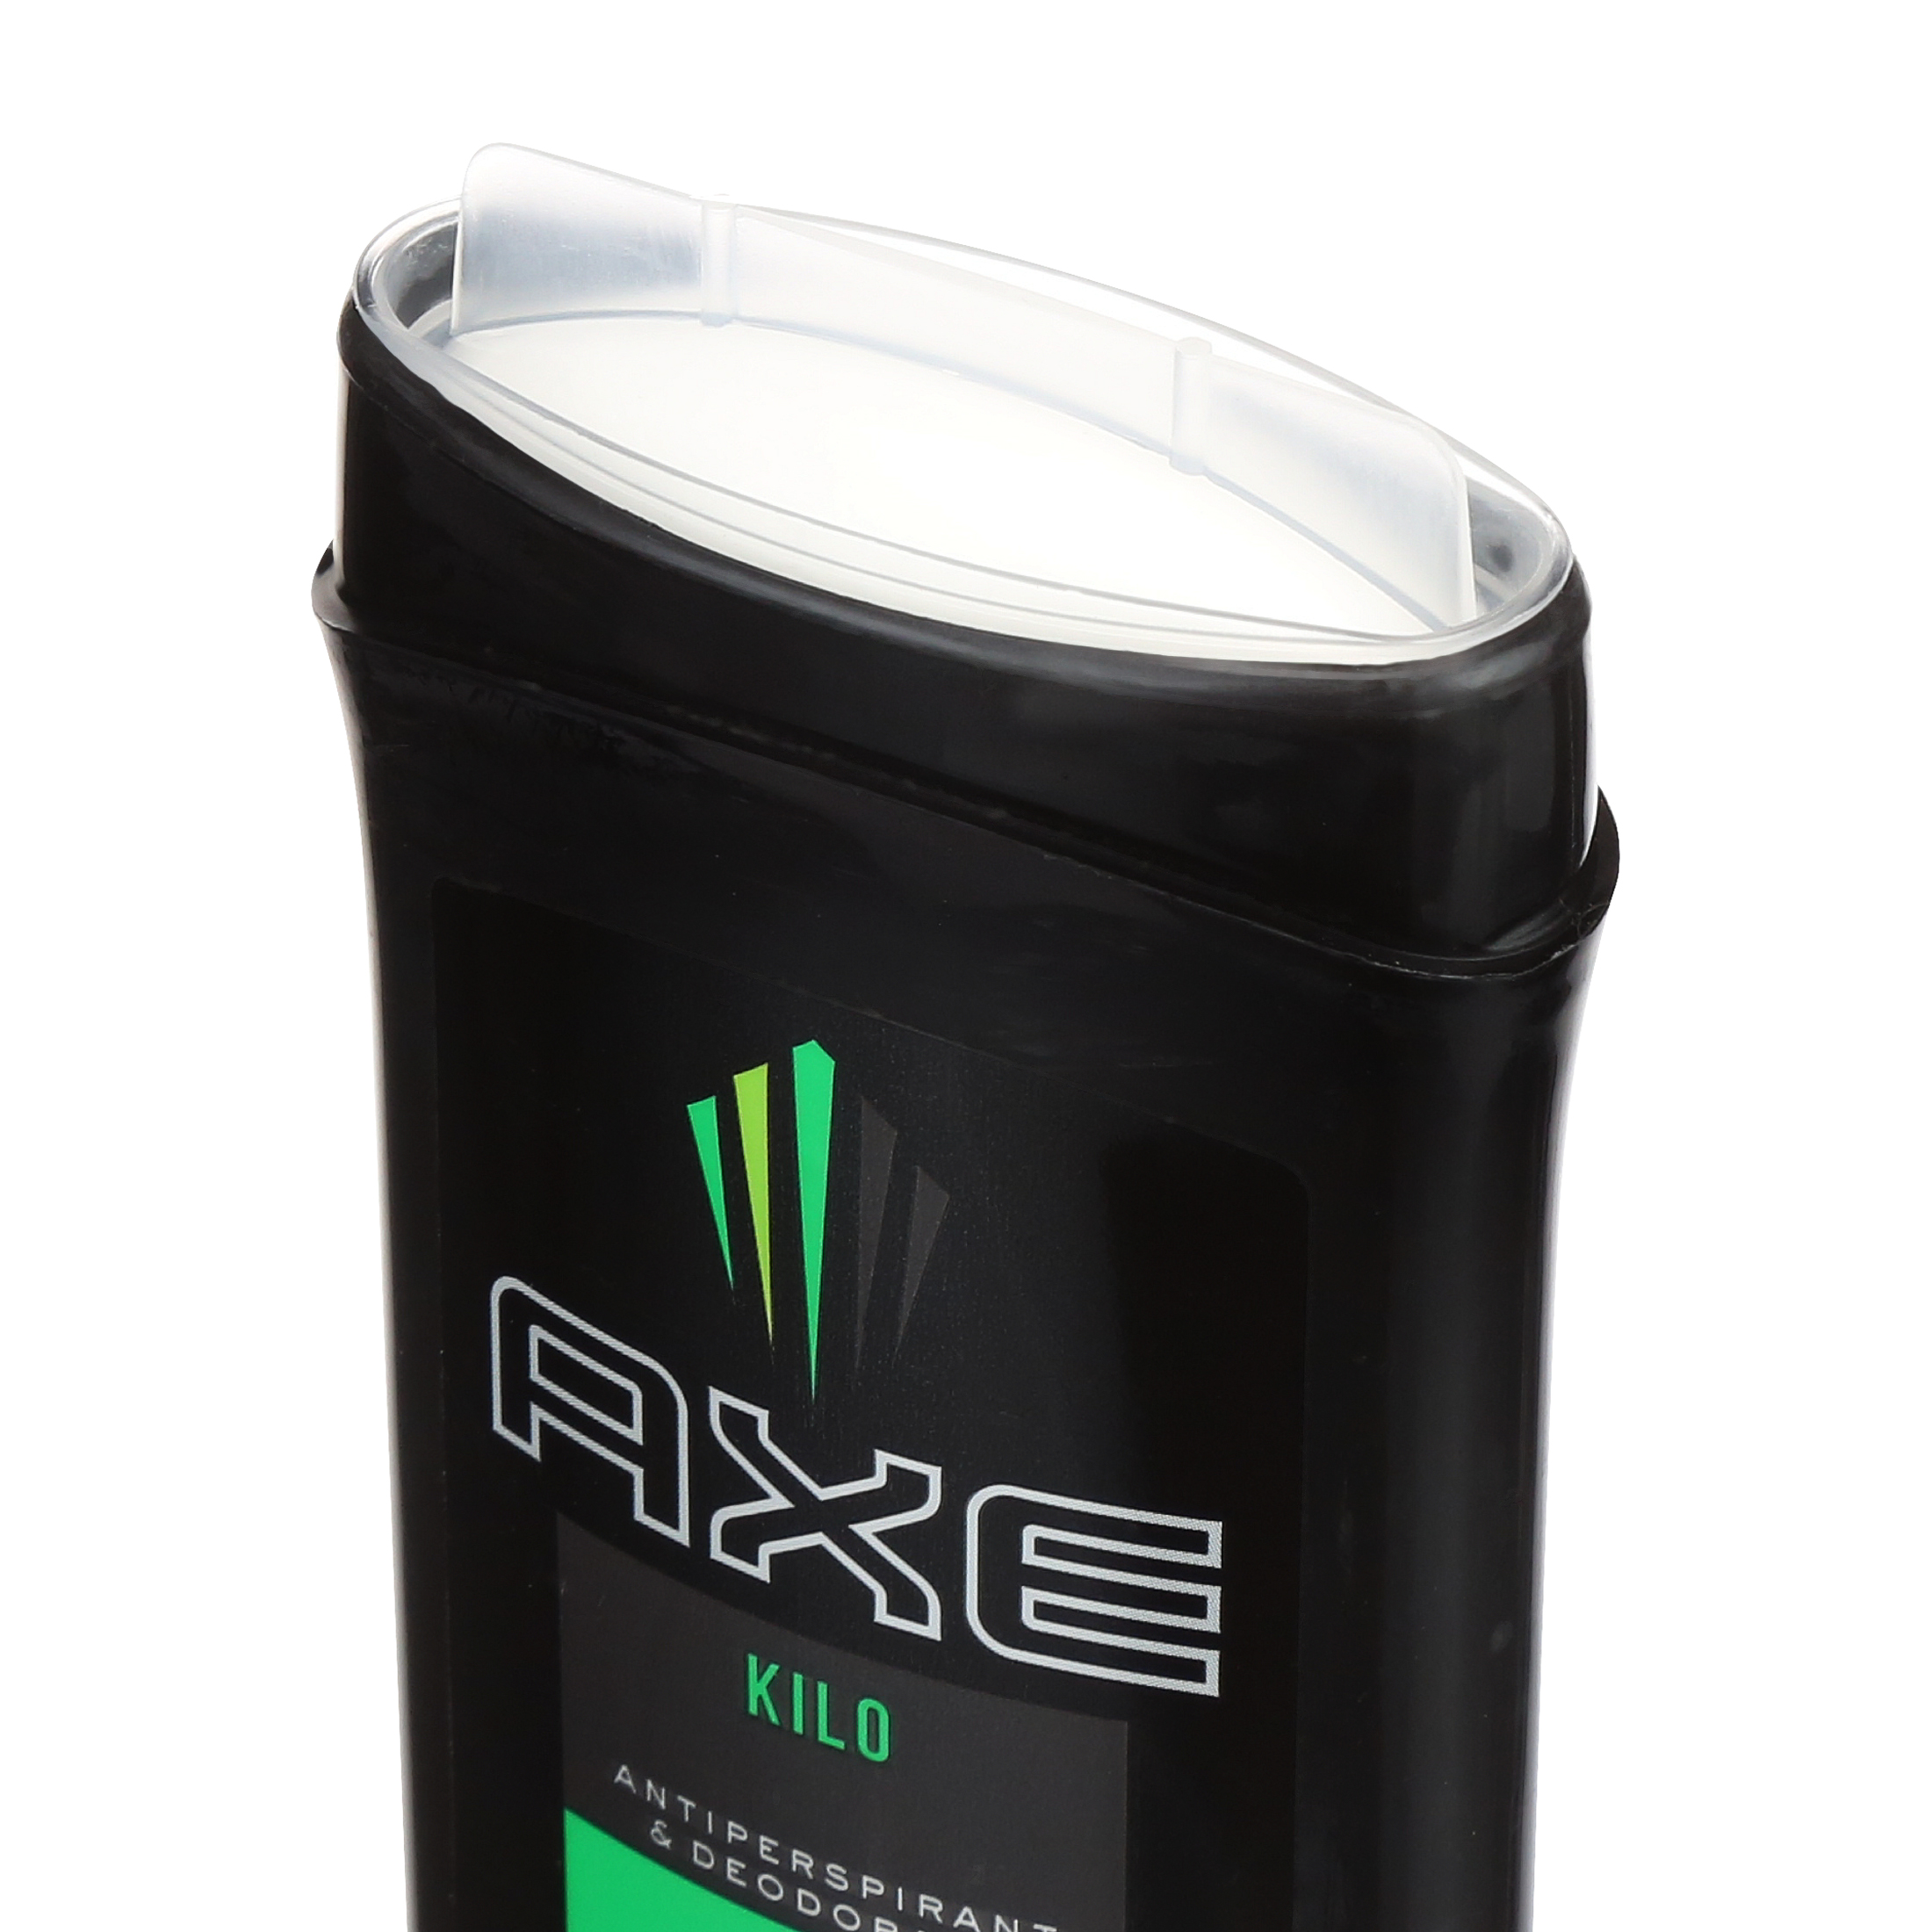 AXE Antiperspirant Deodorant Stick for Men Kilo 2.7 oz - image 5 of 9